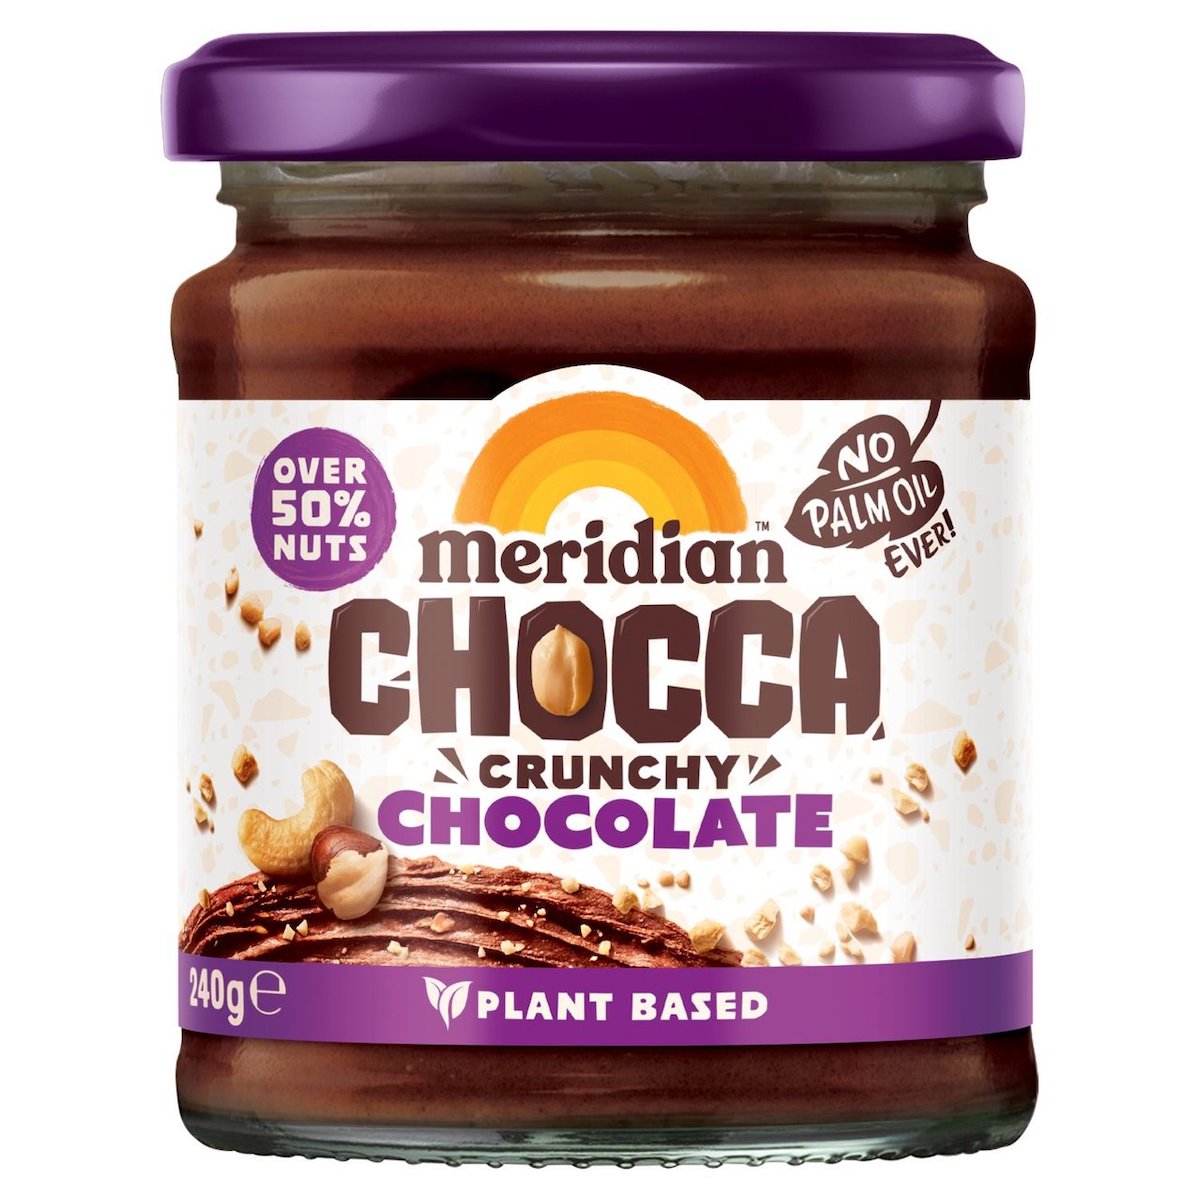 Meridian Chocca Crunchy Chocolate Spread 240g